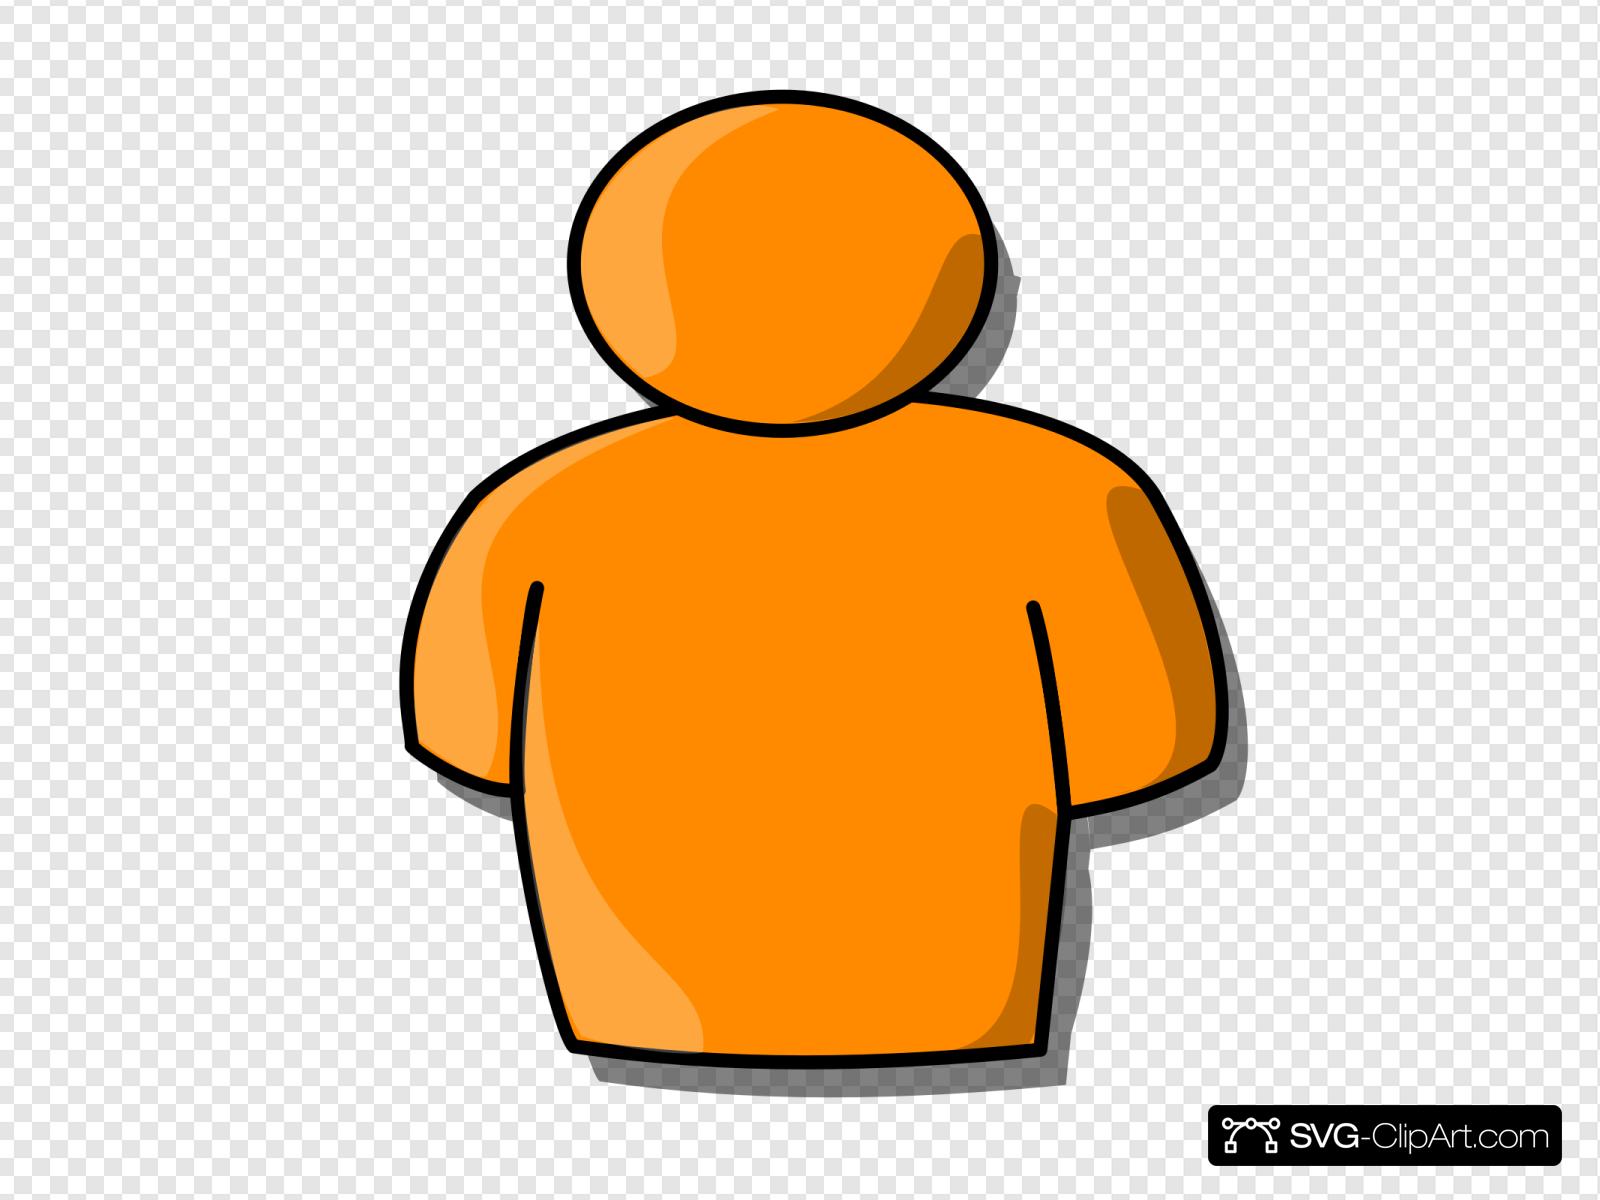 Orange Person Clip art, Icon and SVG